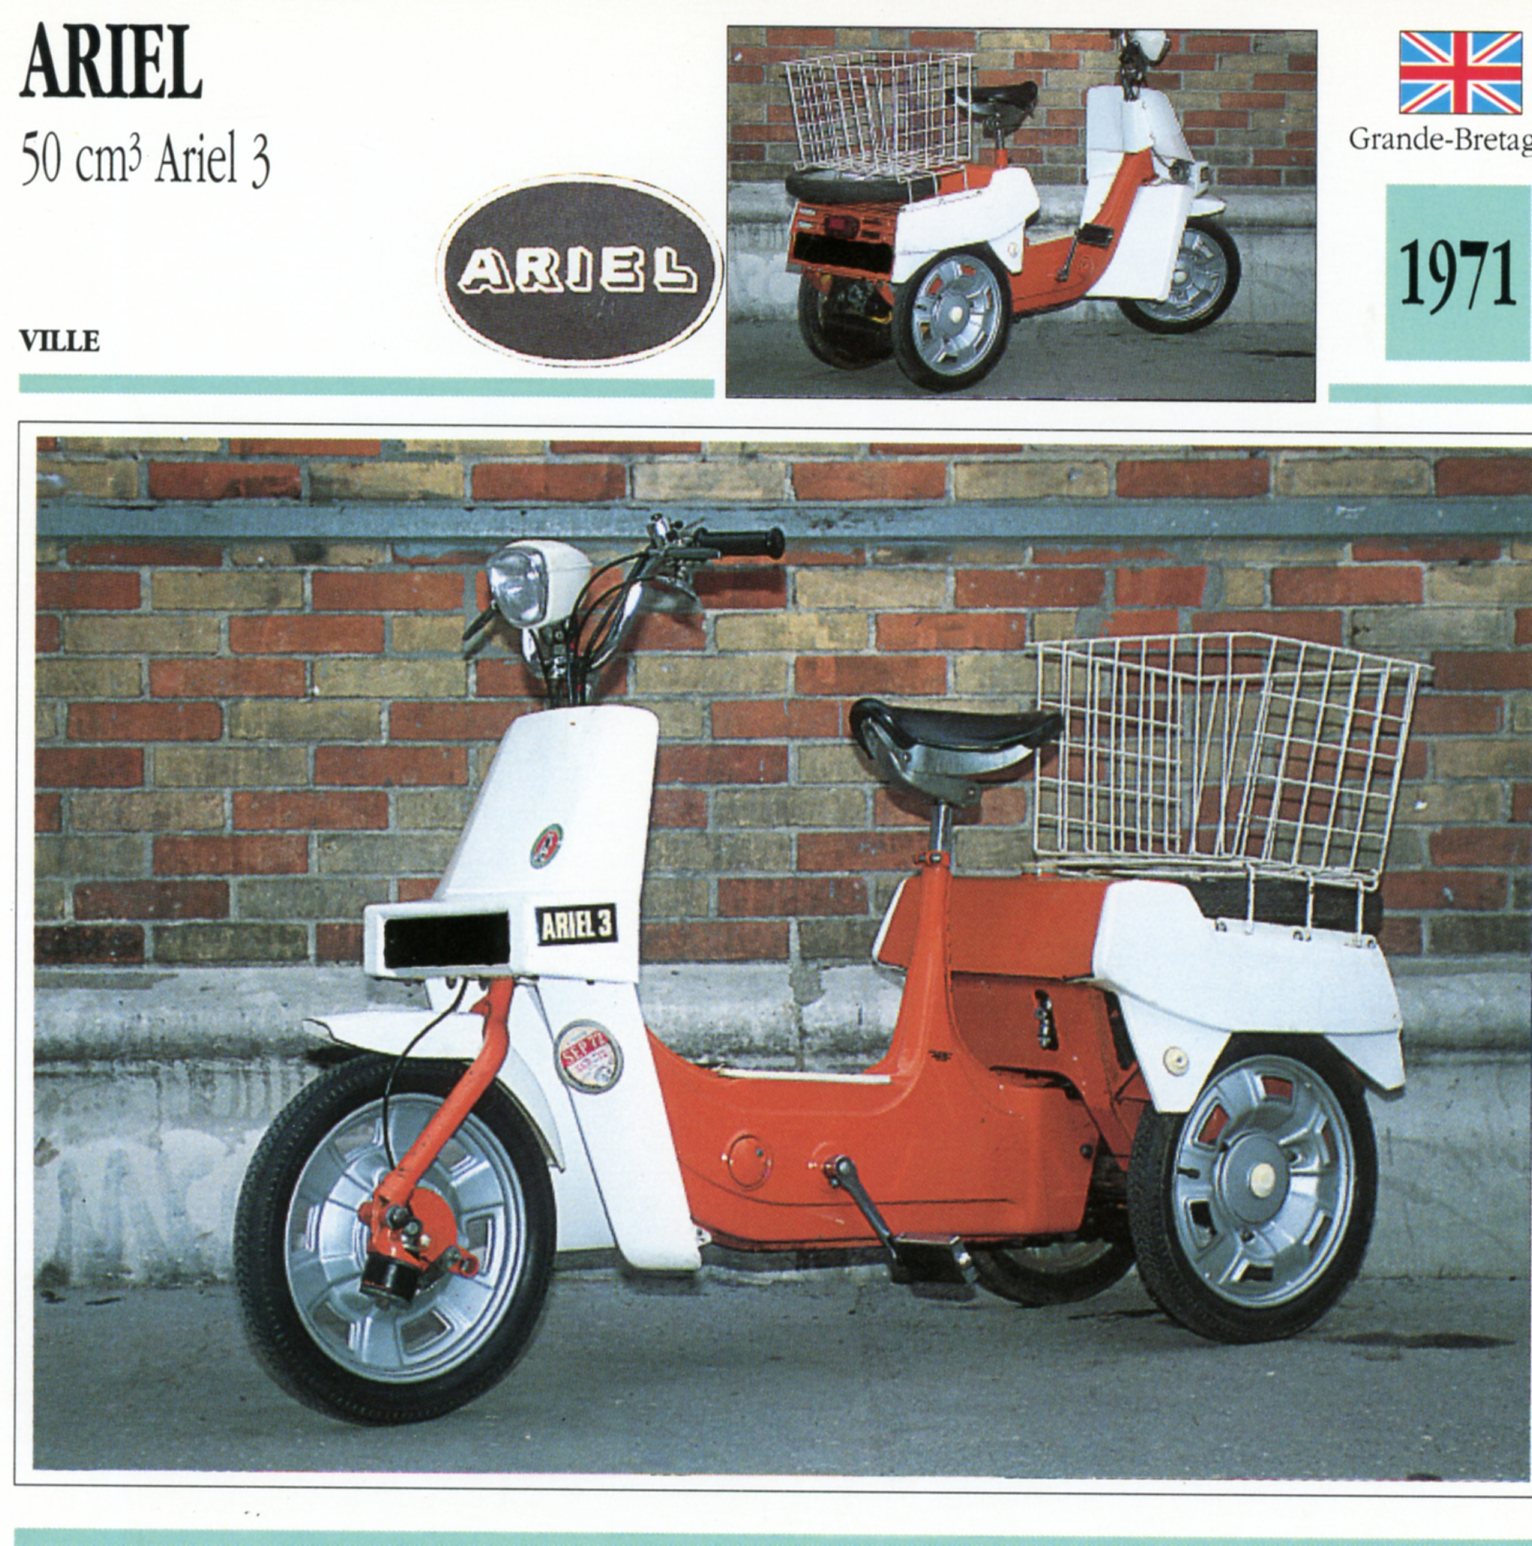 ARIEL 50 ARIEL3 1971 - CARTE CARD FICHE MOTO CARACTERISTIQUES